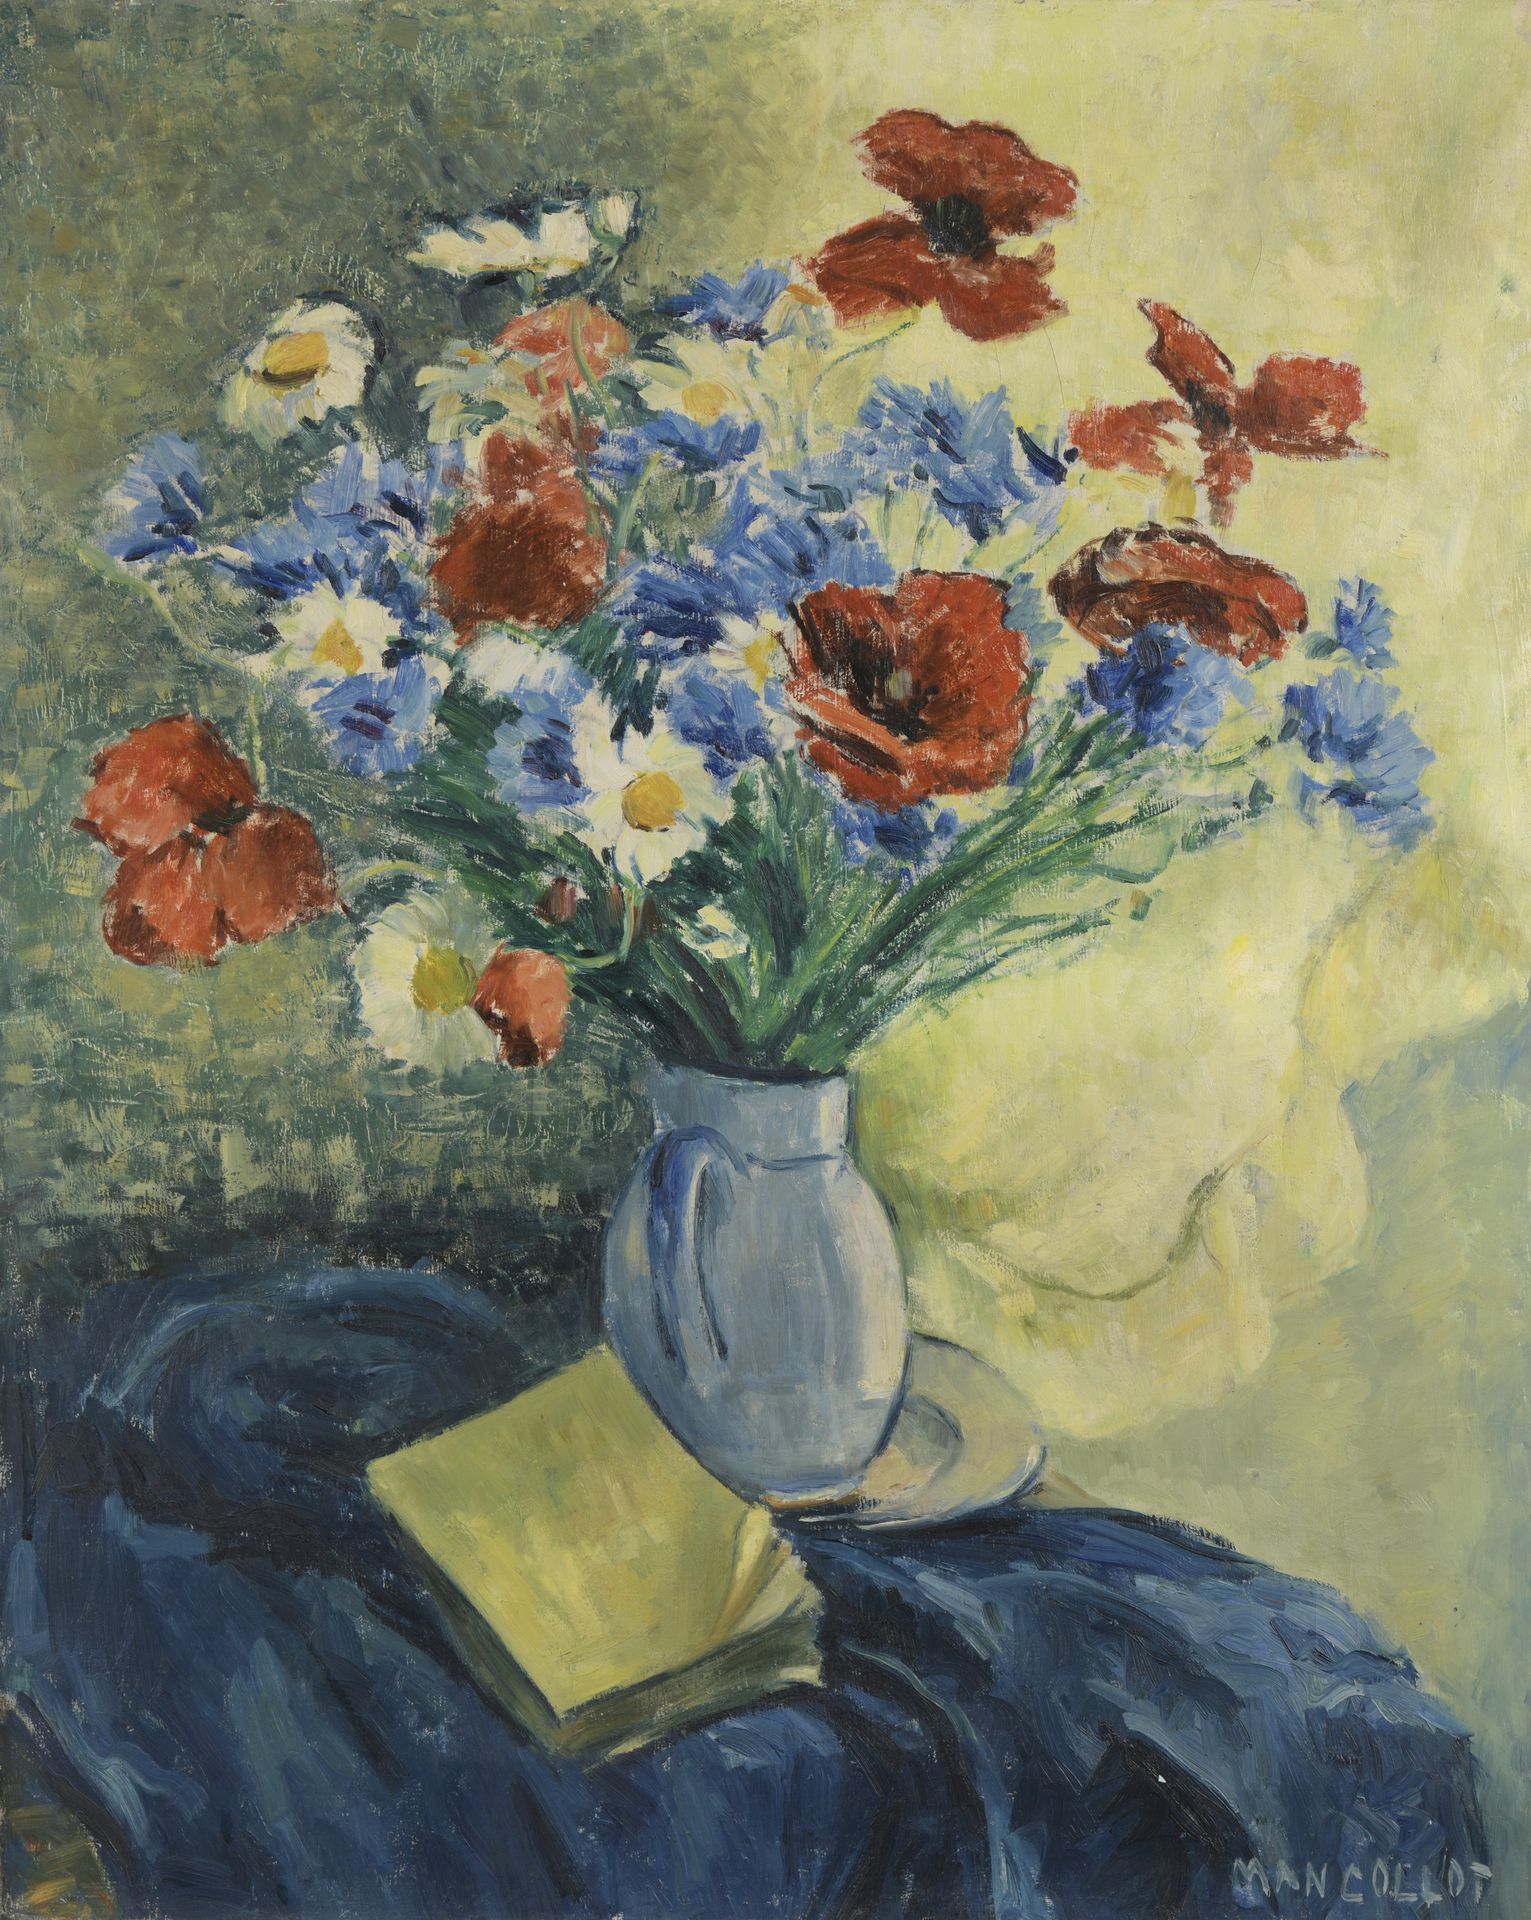 Null MAN COLLOT (1903-1962)

Nature morte au bouquet de fleurs

Huile sur toile.&hellip;